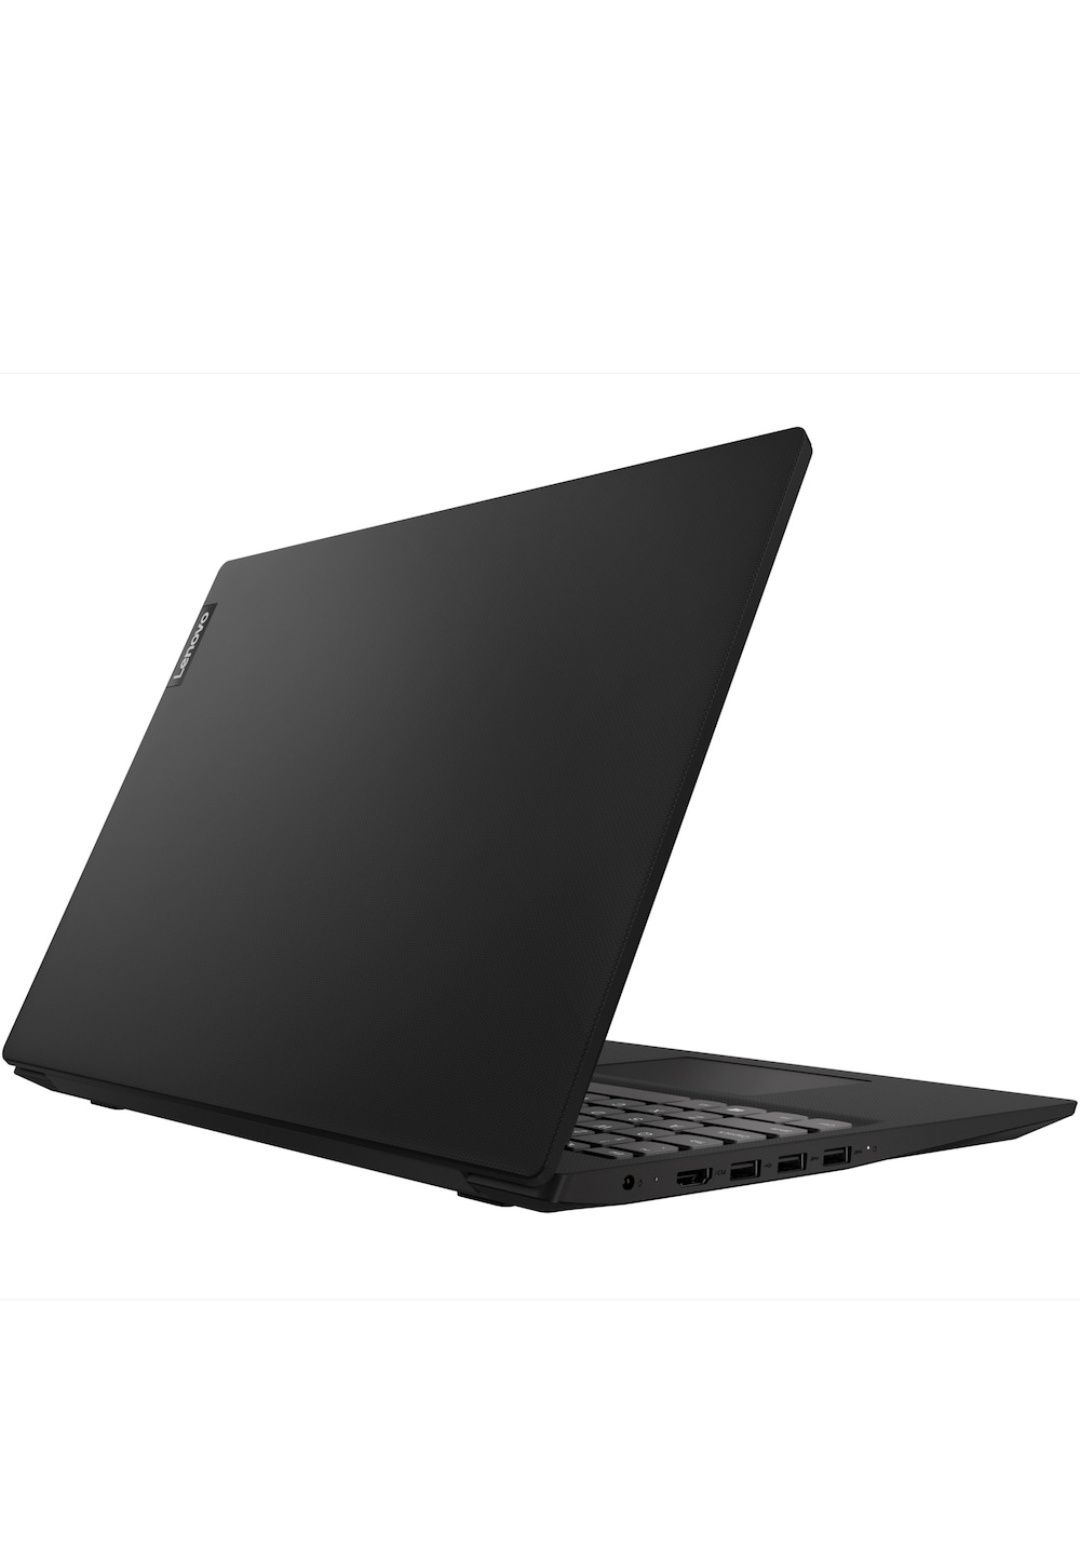 Laptop Lenovo Ideapad S145-15API